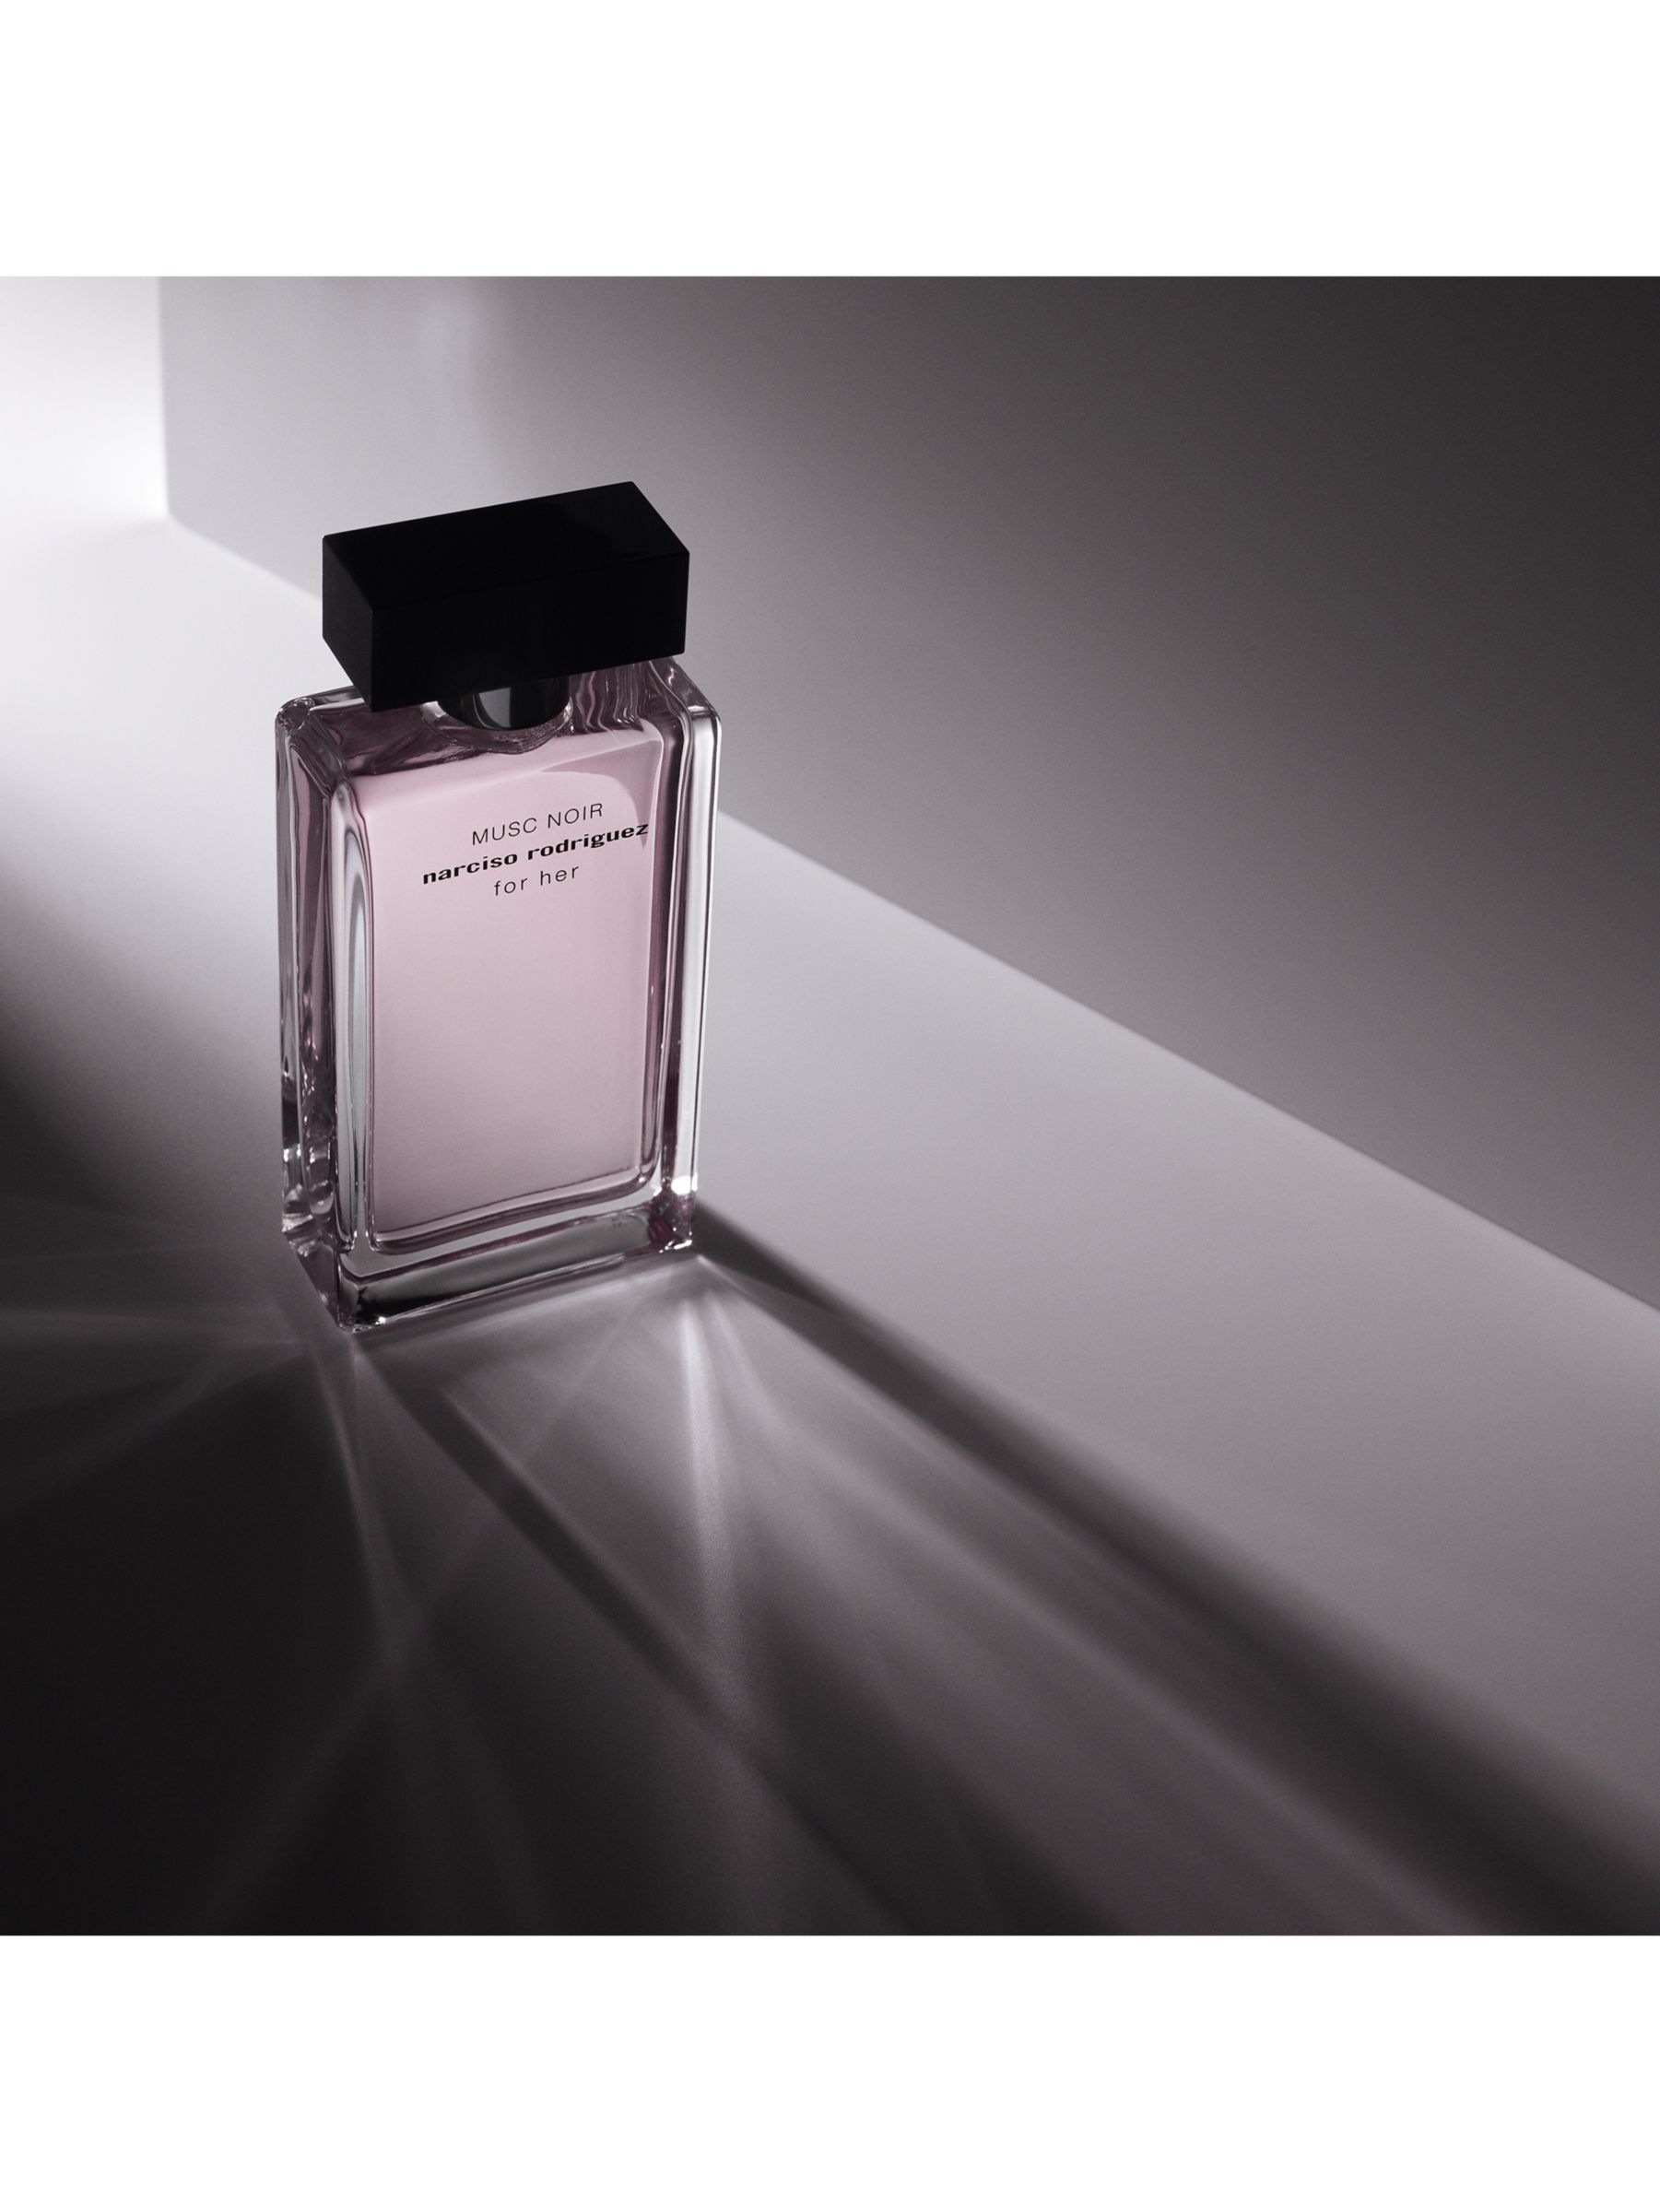 Narciso Rodriguez For Her Musc Noir Eau de Parfum at John Lewis & Partners